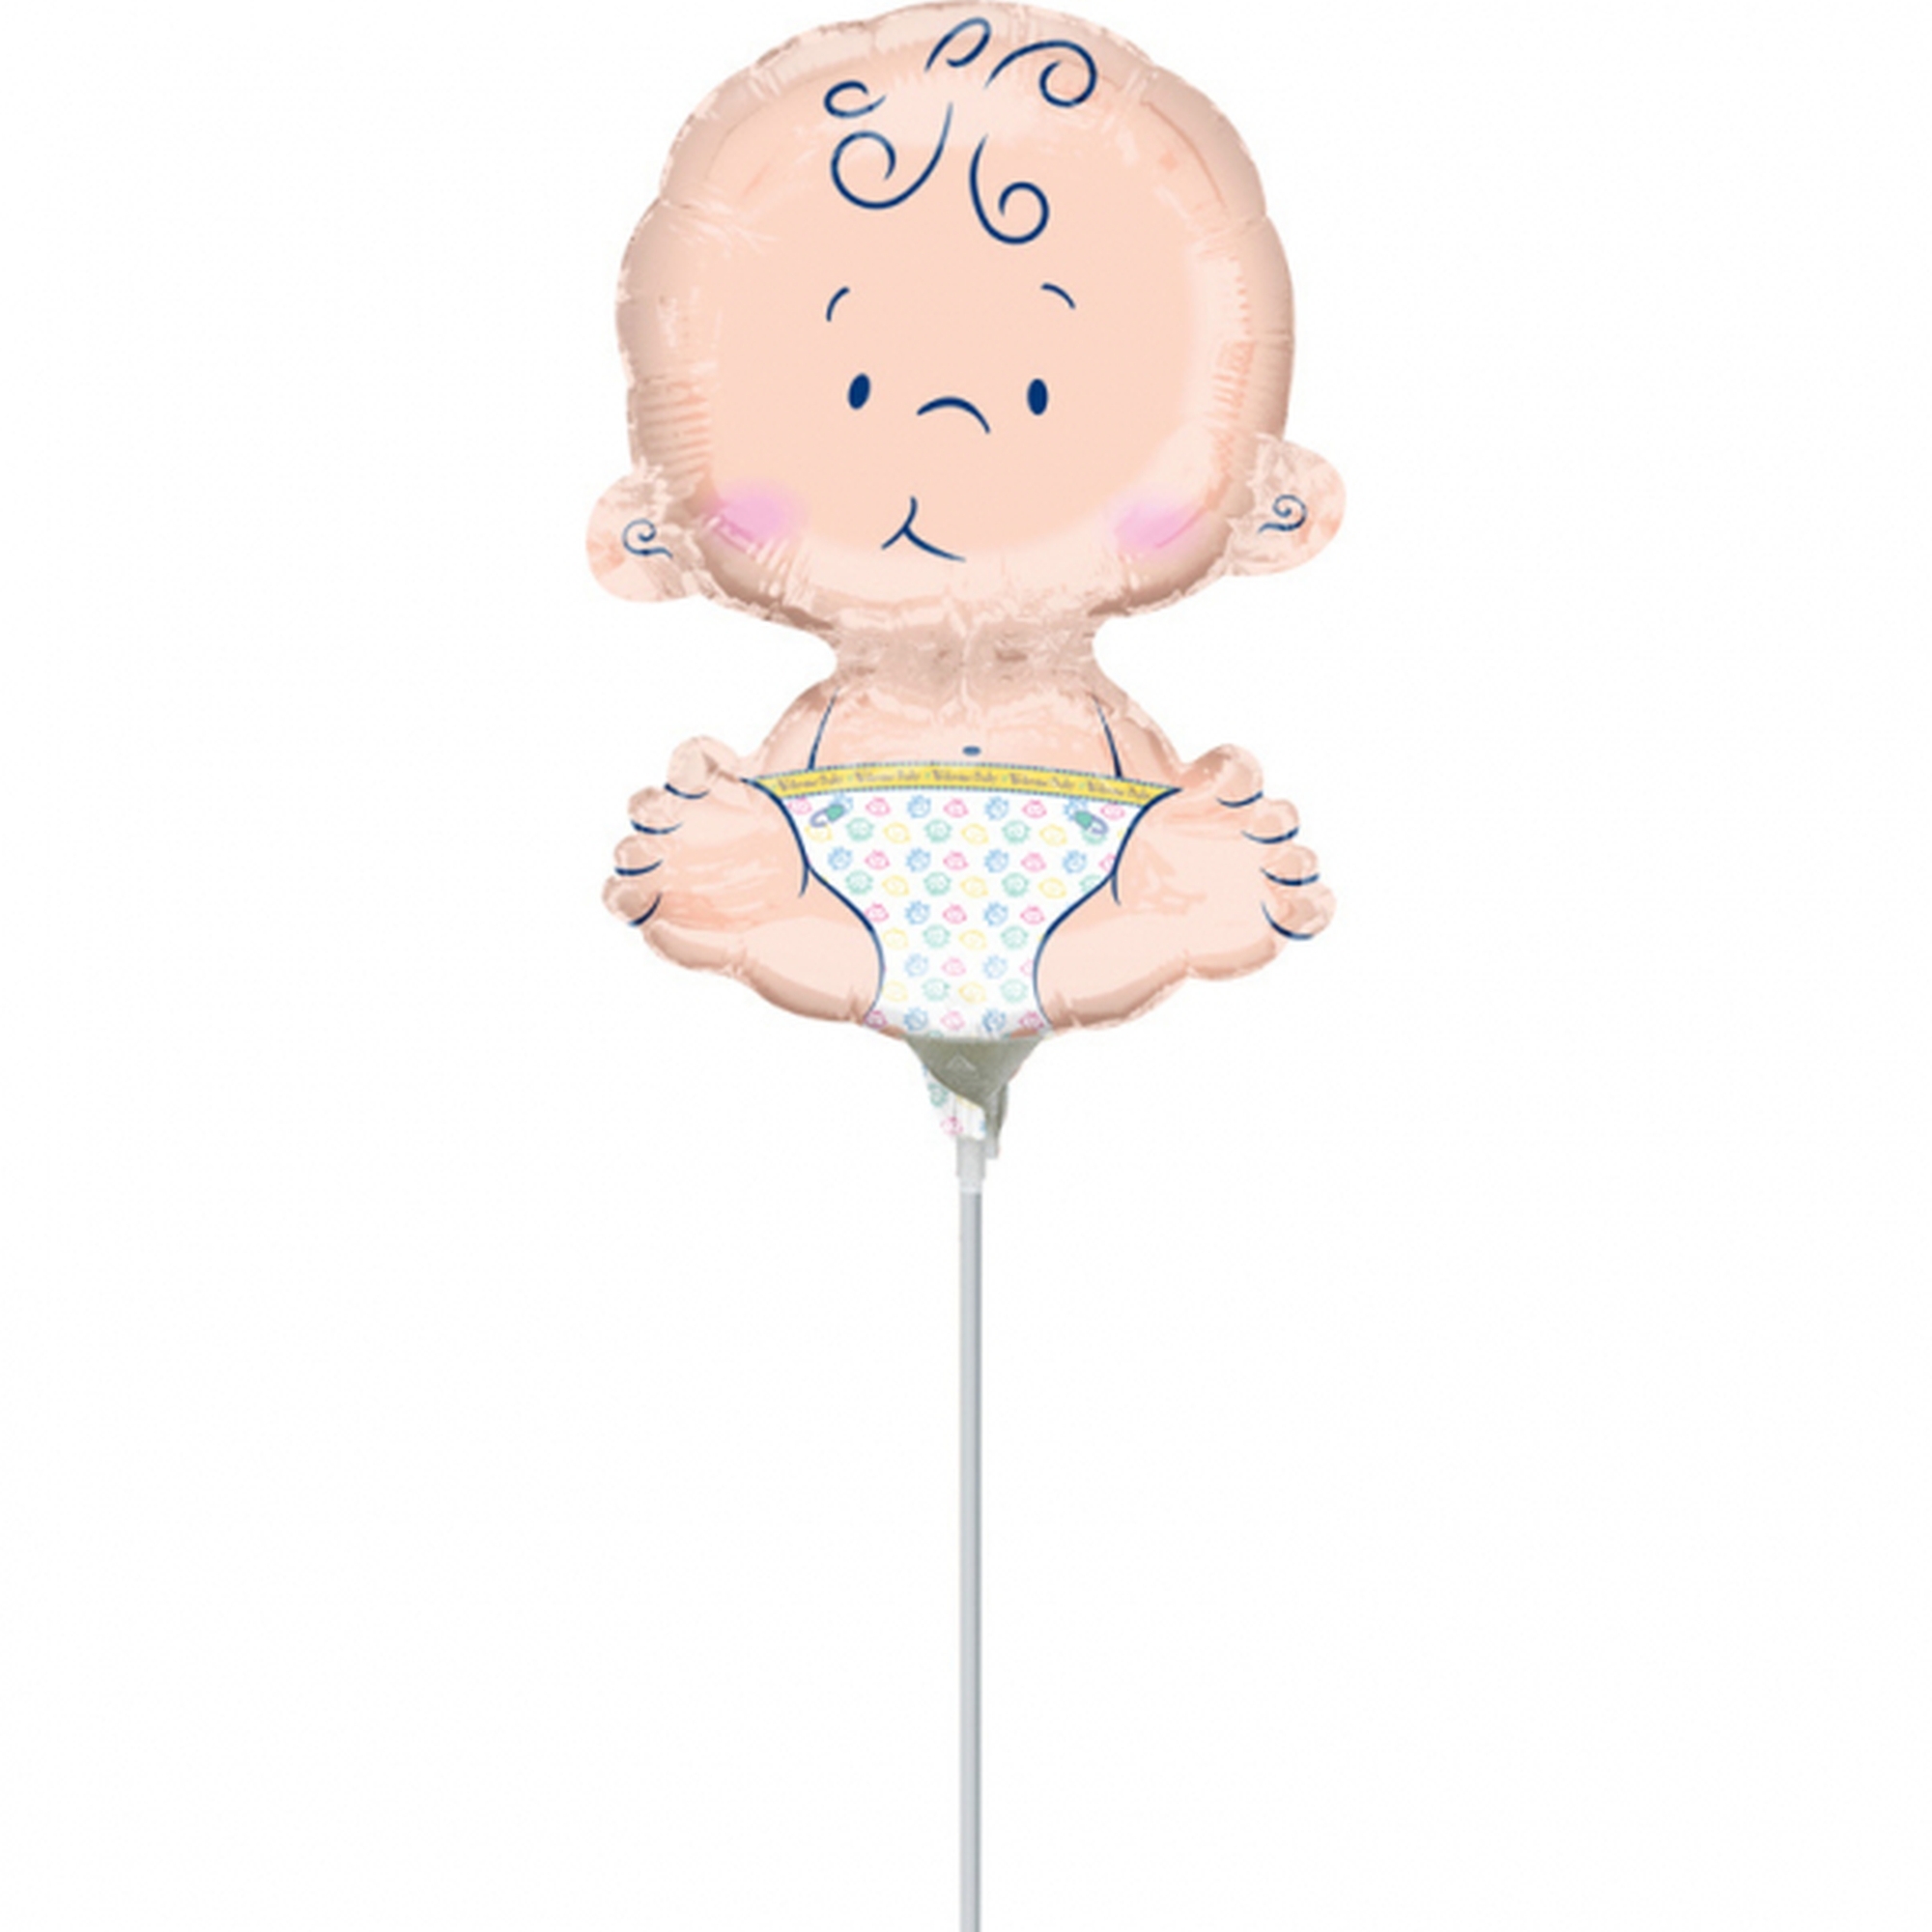 Folienballon Minishape "Baby" luftbefüllt